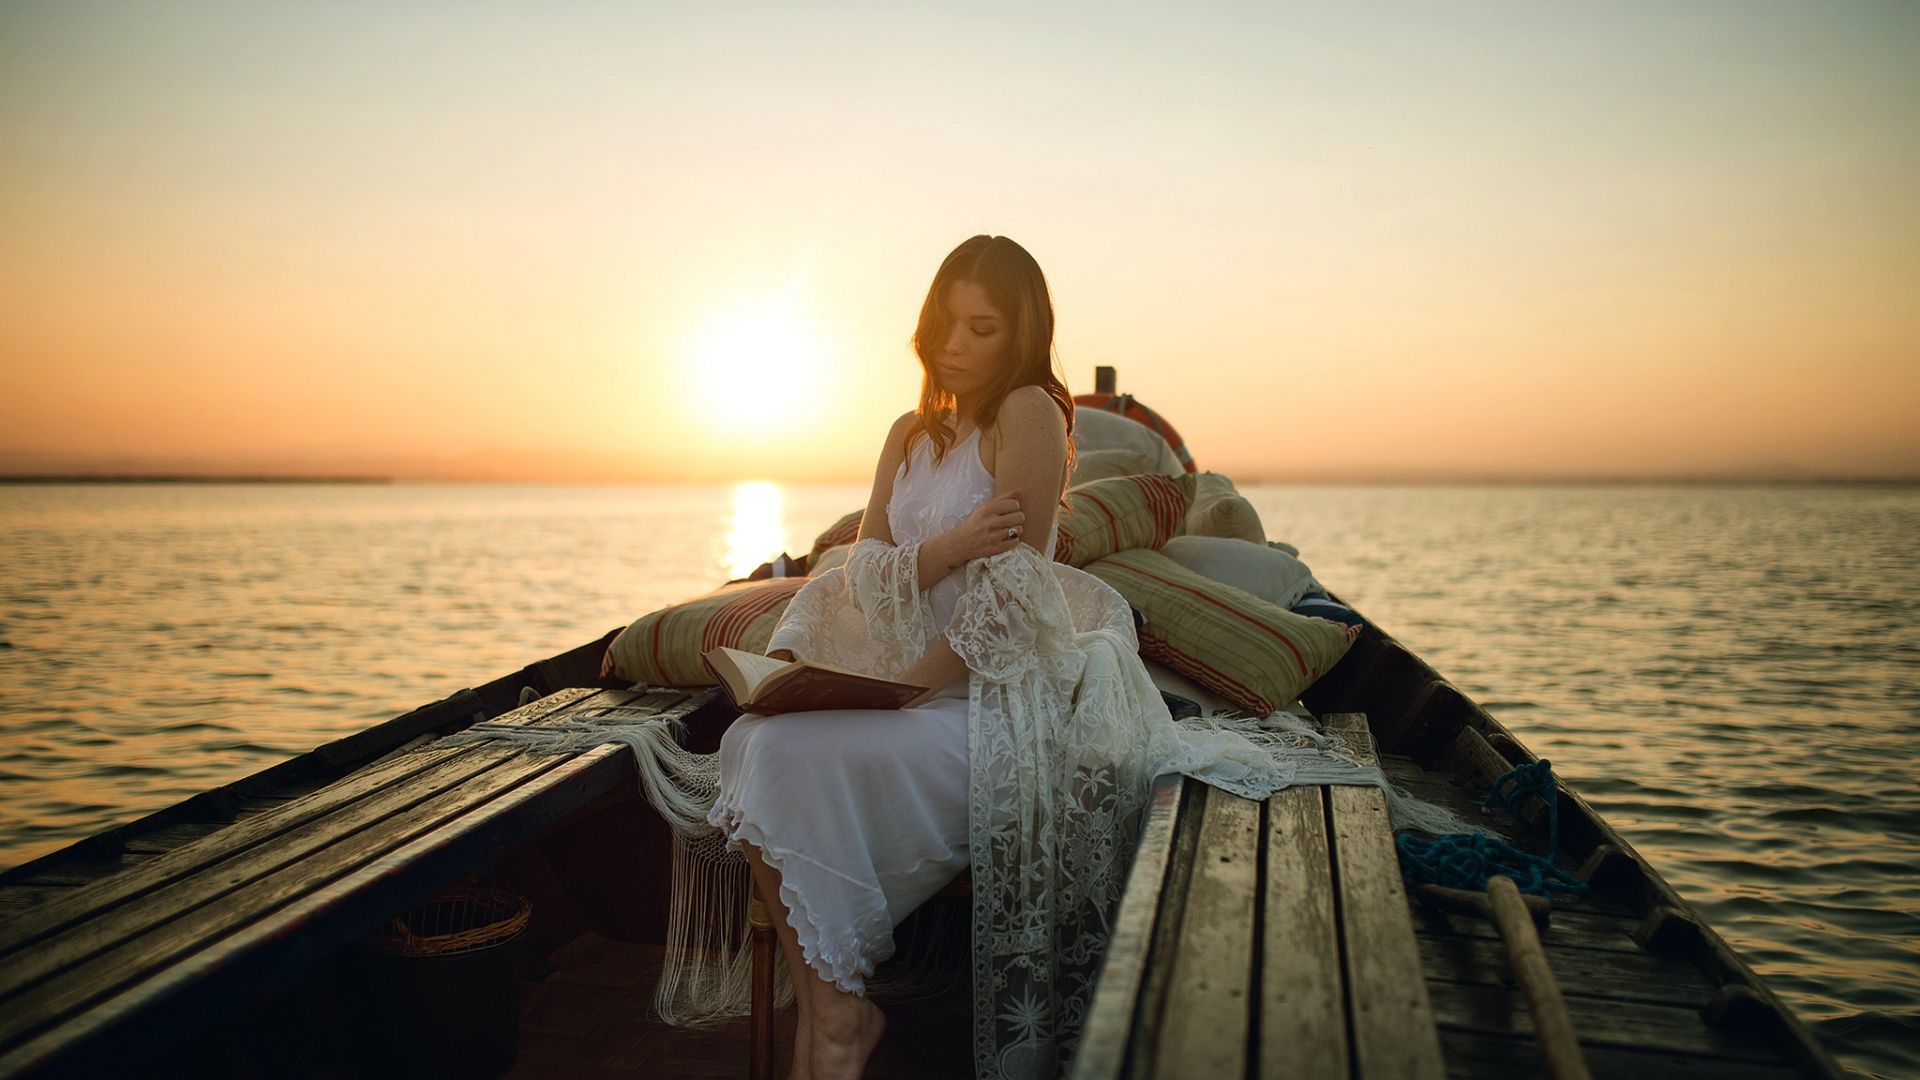 Wallpaper Boat, reading book, sunset, girl model